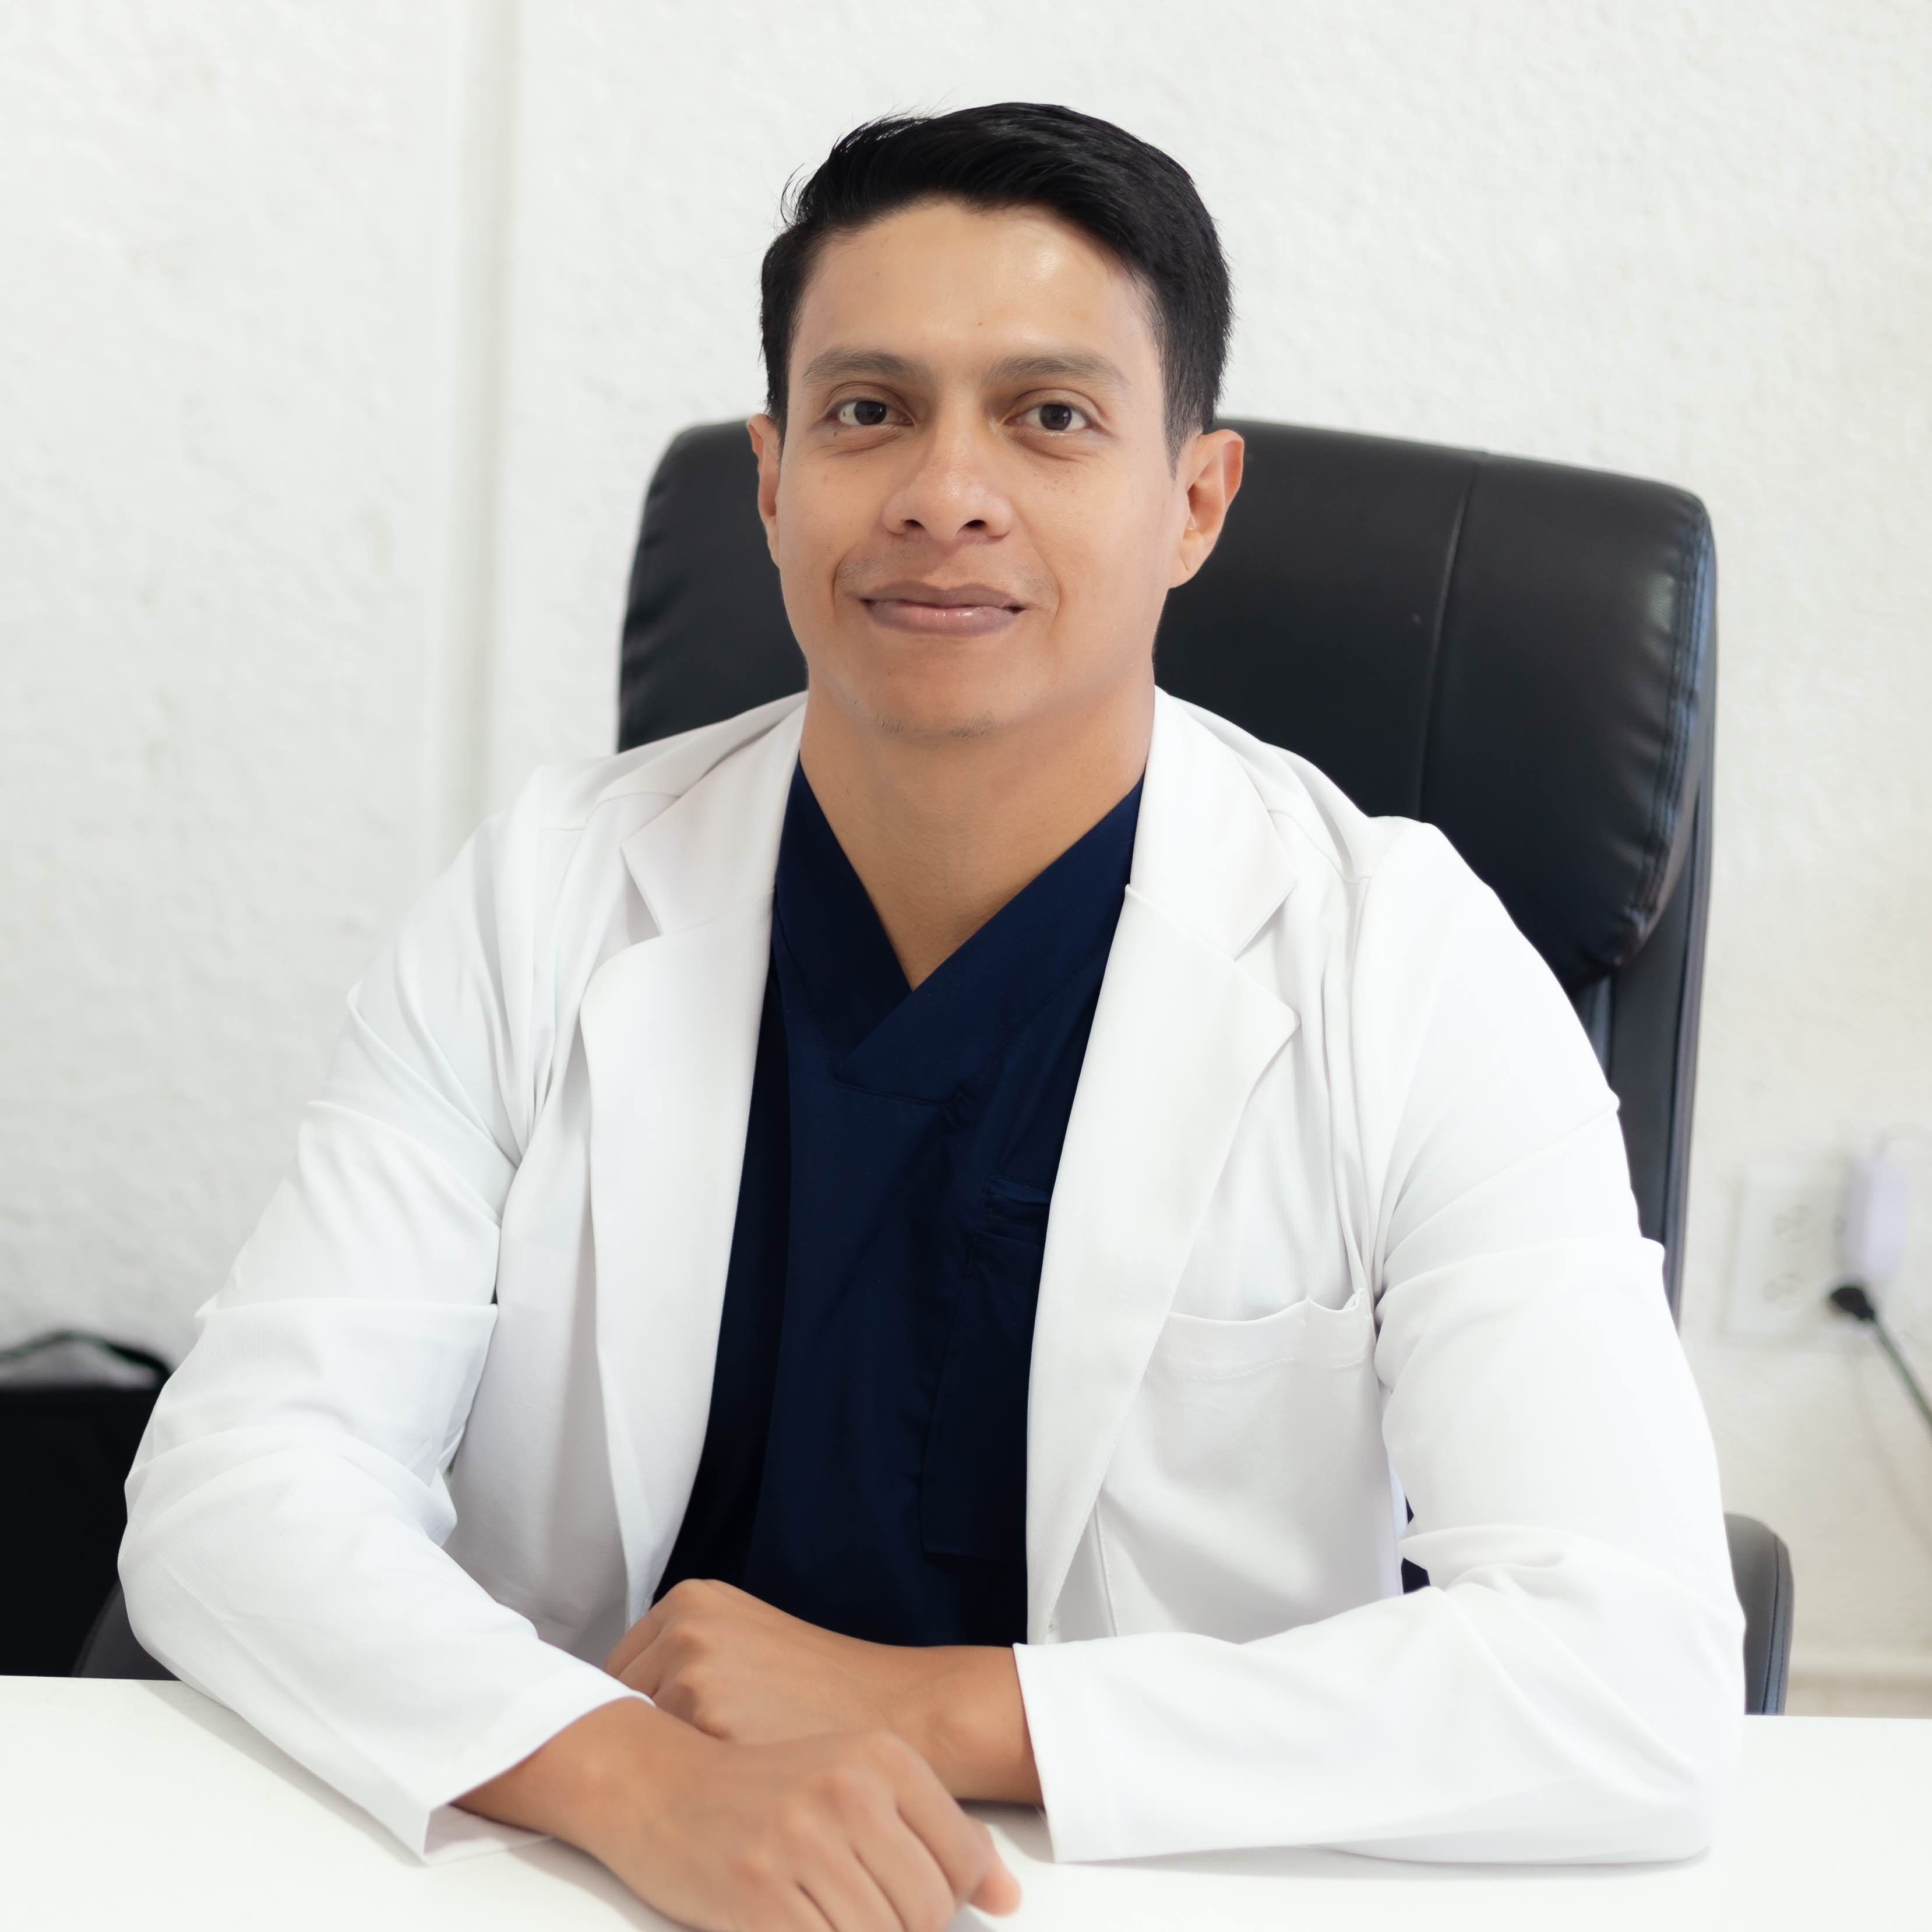 Dr. José De Jesús Meléndez Hernández Médico cirujano y partero, Maestría en Nutrición Clínica y Alimentación